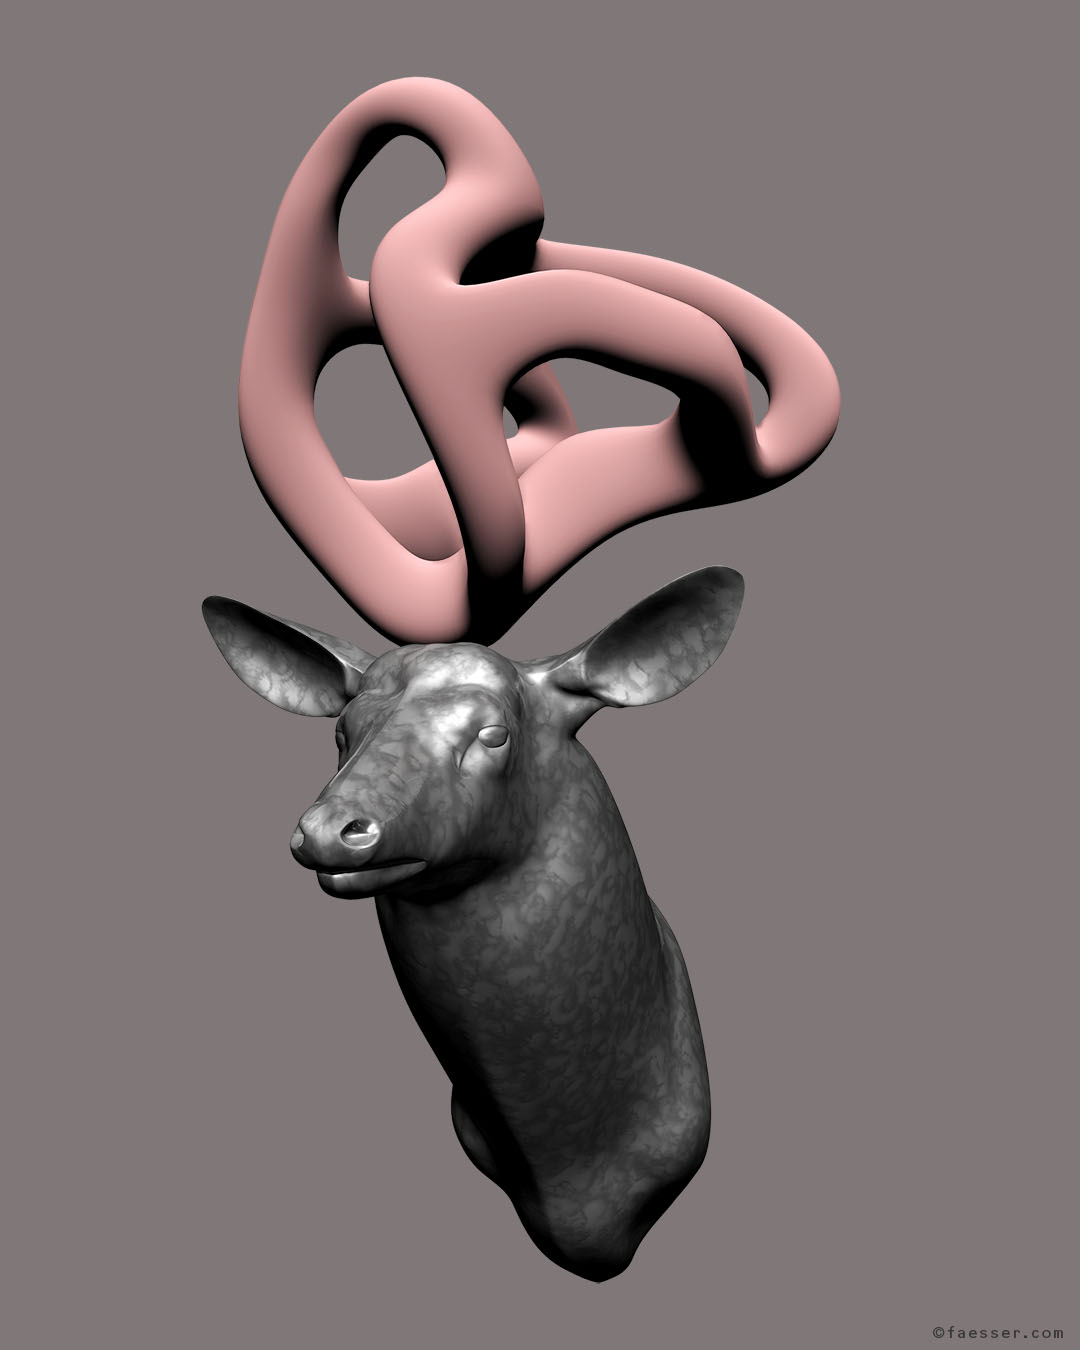 My Deer Sculpture: silver deer trophy with velvet modern pink sculpture as antlers; work of art as figurative sculpture; artist Roland Faesser, sculptor and painter 2017